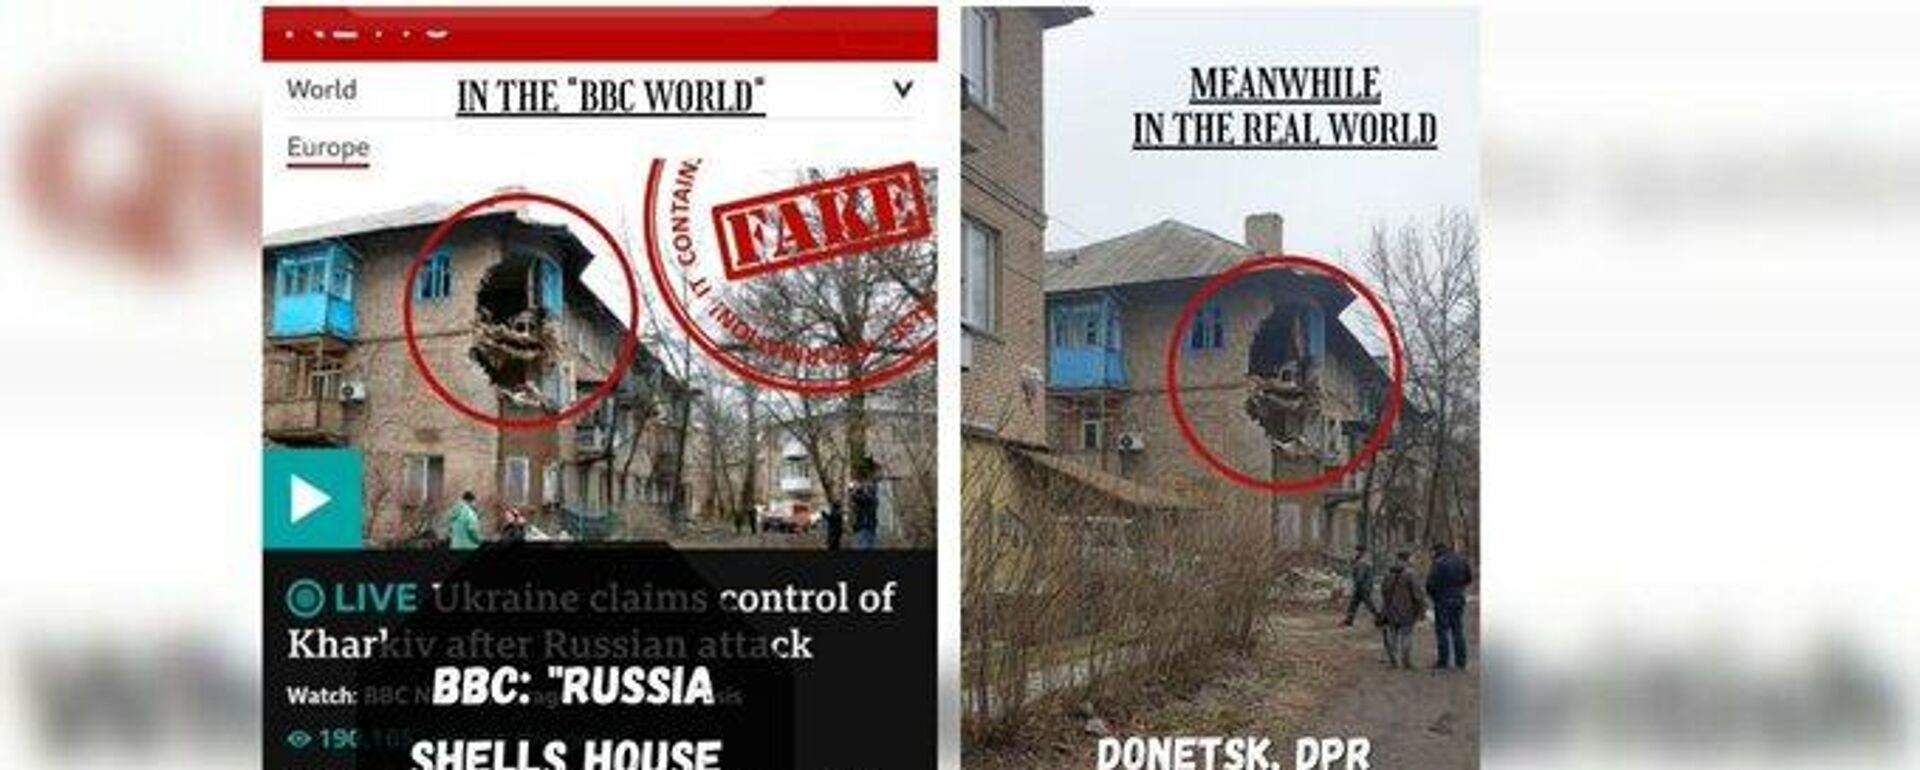 BBC'nin Harkov'a ait olduğunu iddia ettiği fotoğraf ile Donetsk'deki yıkımın fotoğrafını yan yana koyan Rusya Dışişleri Bakanlığı, BBC Dünyası: Rusya Harkov'da evleri top ateşine tutuyor. Bu arada gerçek dünyada: Ukrayna ordusunun top ateşine tuttuğu Donetsk şehrinin Myronova Sokağı'ndaki 5 numaralı ev paylaşımını yaptı.  - Sputnik Türkiye, 1920, 01.03.2022